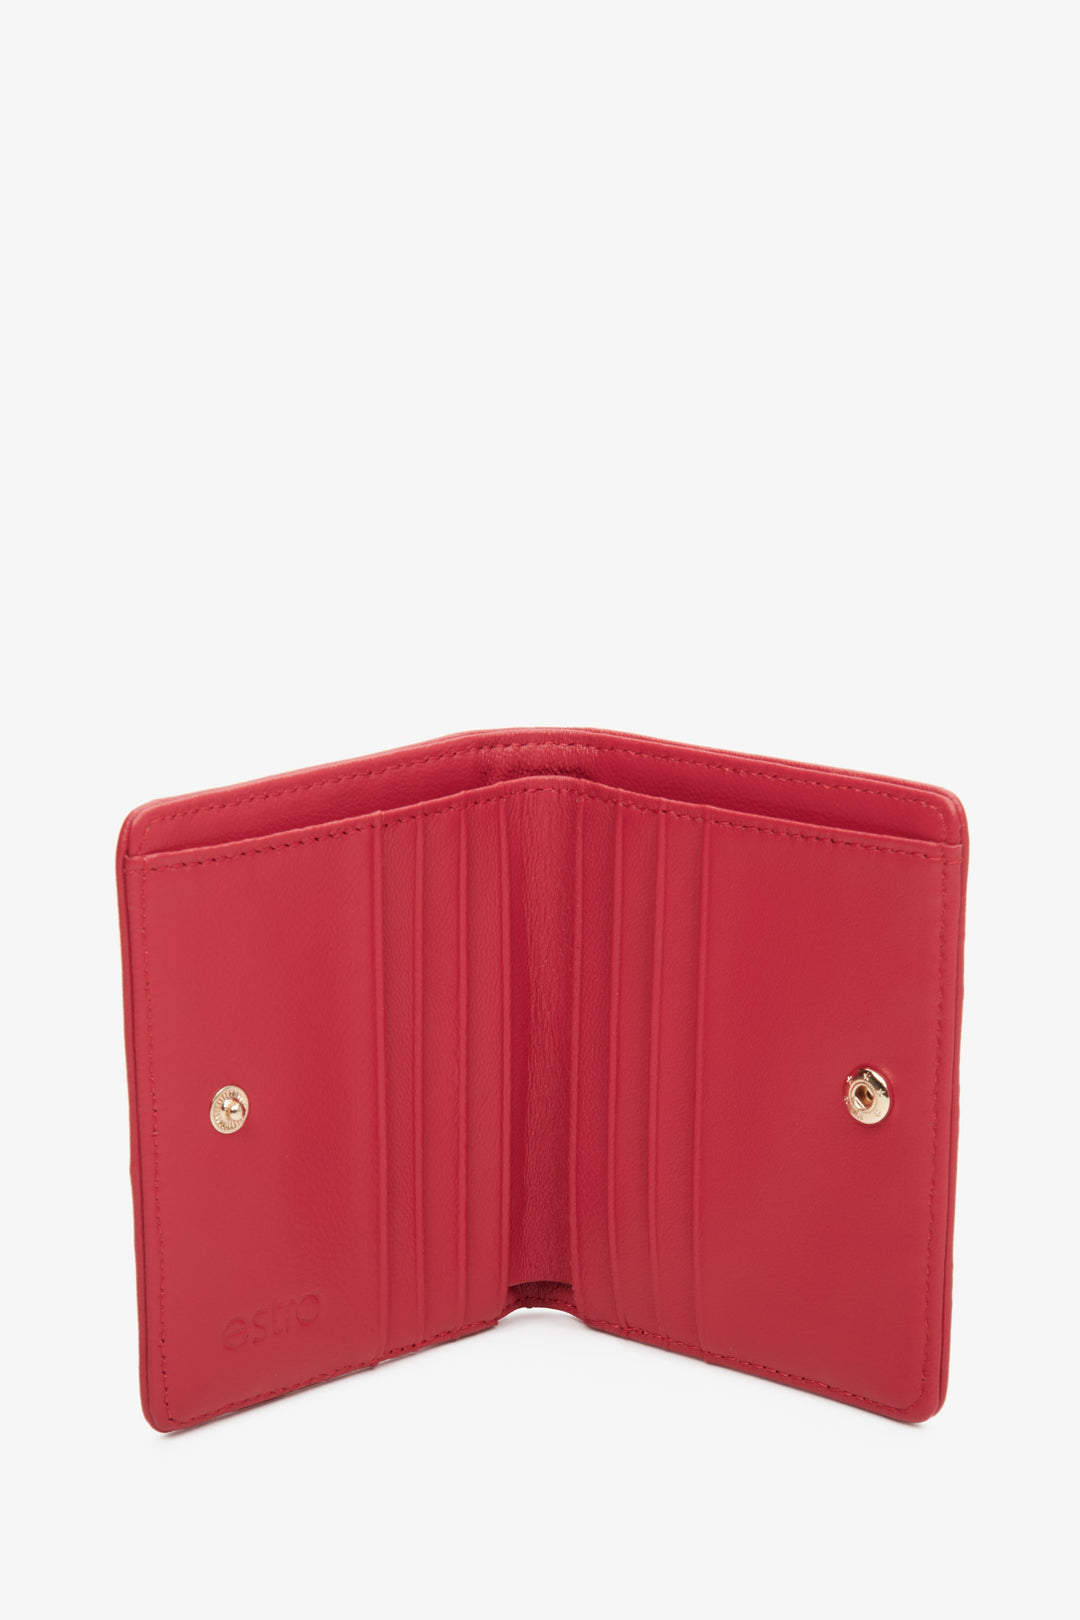 Mały, czerwony portfel damski Estro ze skóry naturalnej - wnętrze modelu.